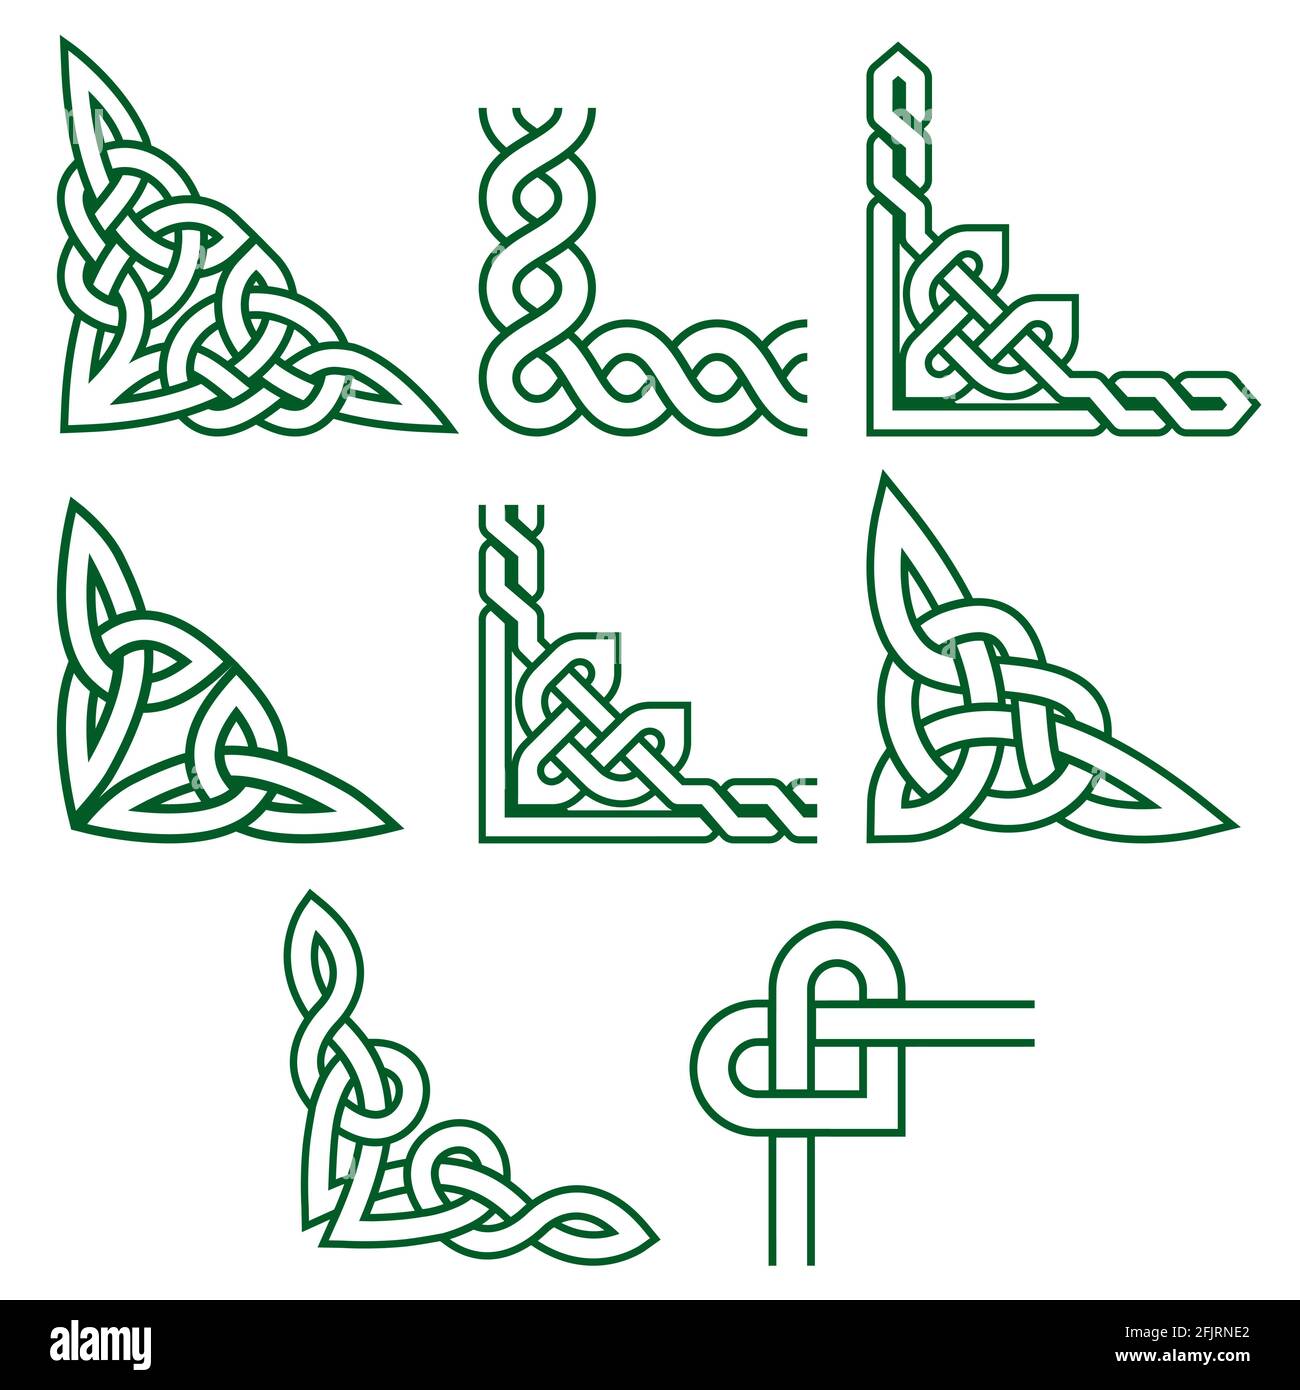 Keltisch grüne Ecken Vektor-Design-Set, irische detaillierte geflochtene Rahmenmuster - Grußkarte und invititon Design-Elemente Stock Vektor